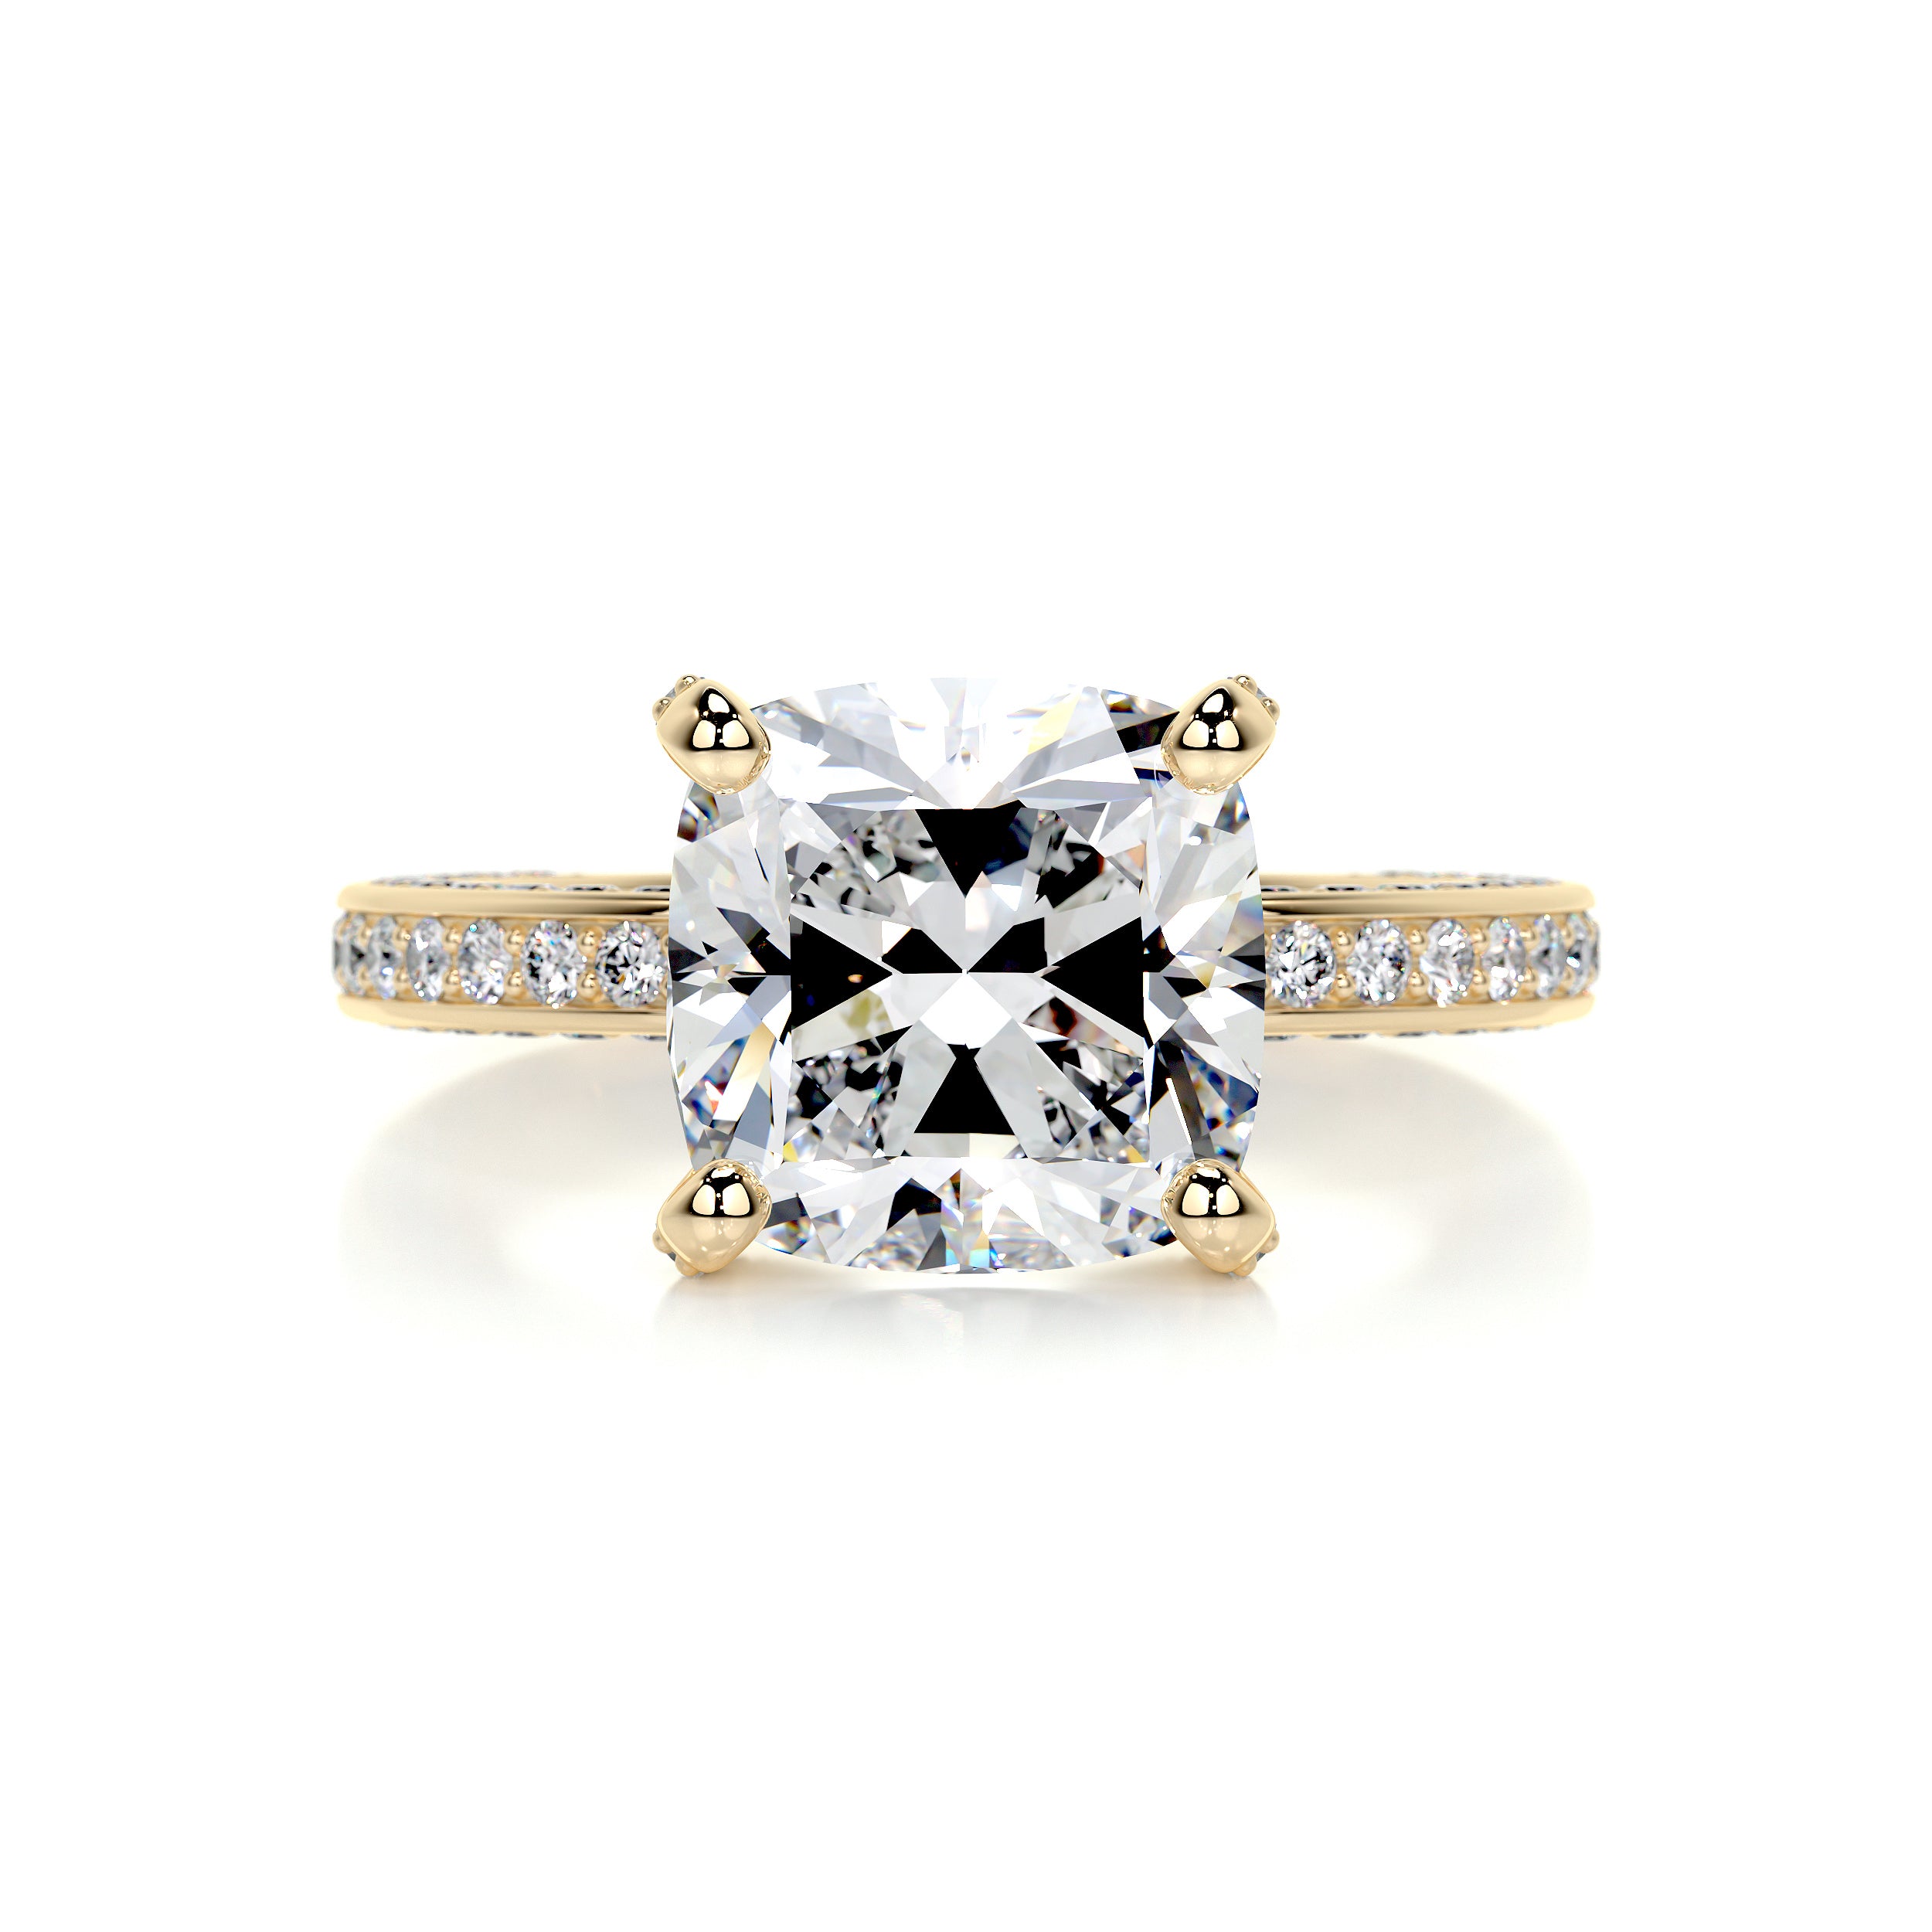 Lyric Diamond Engagement Ring   (2.75 Carat) -18K Yellow Gold